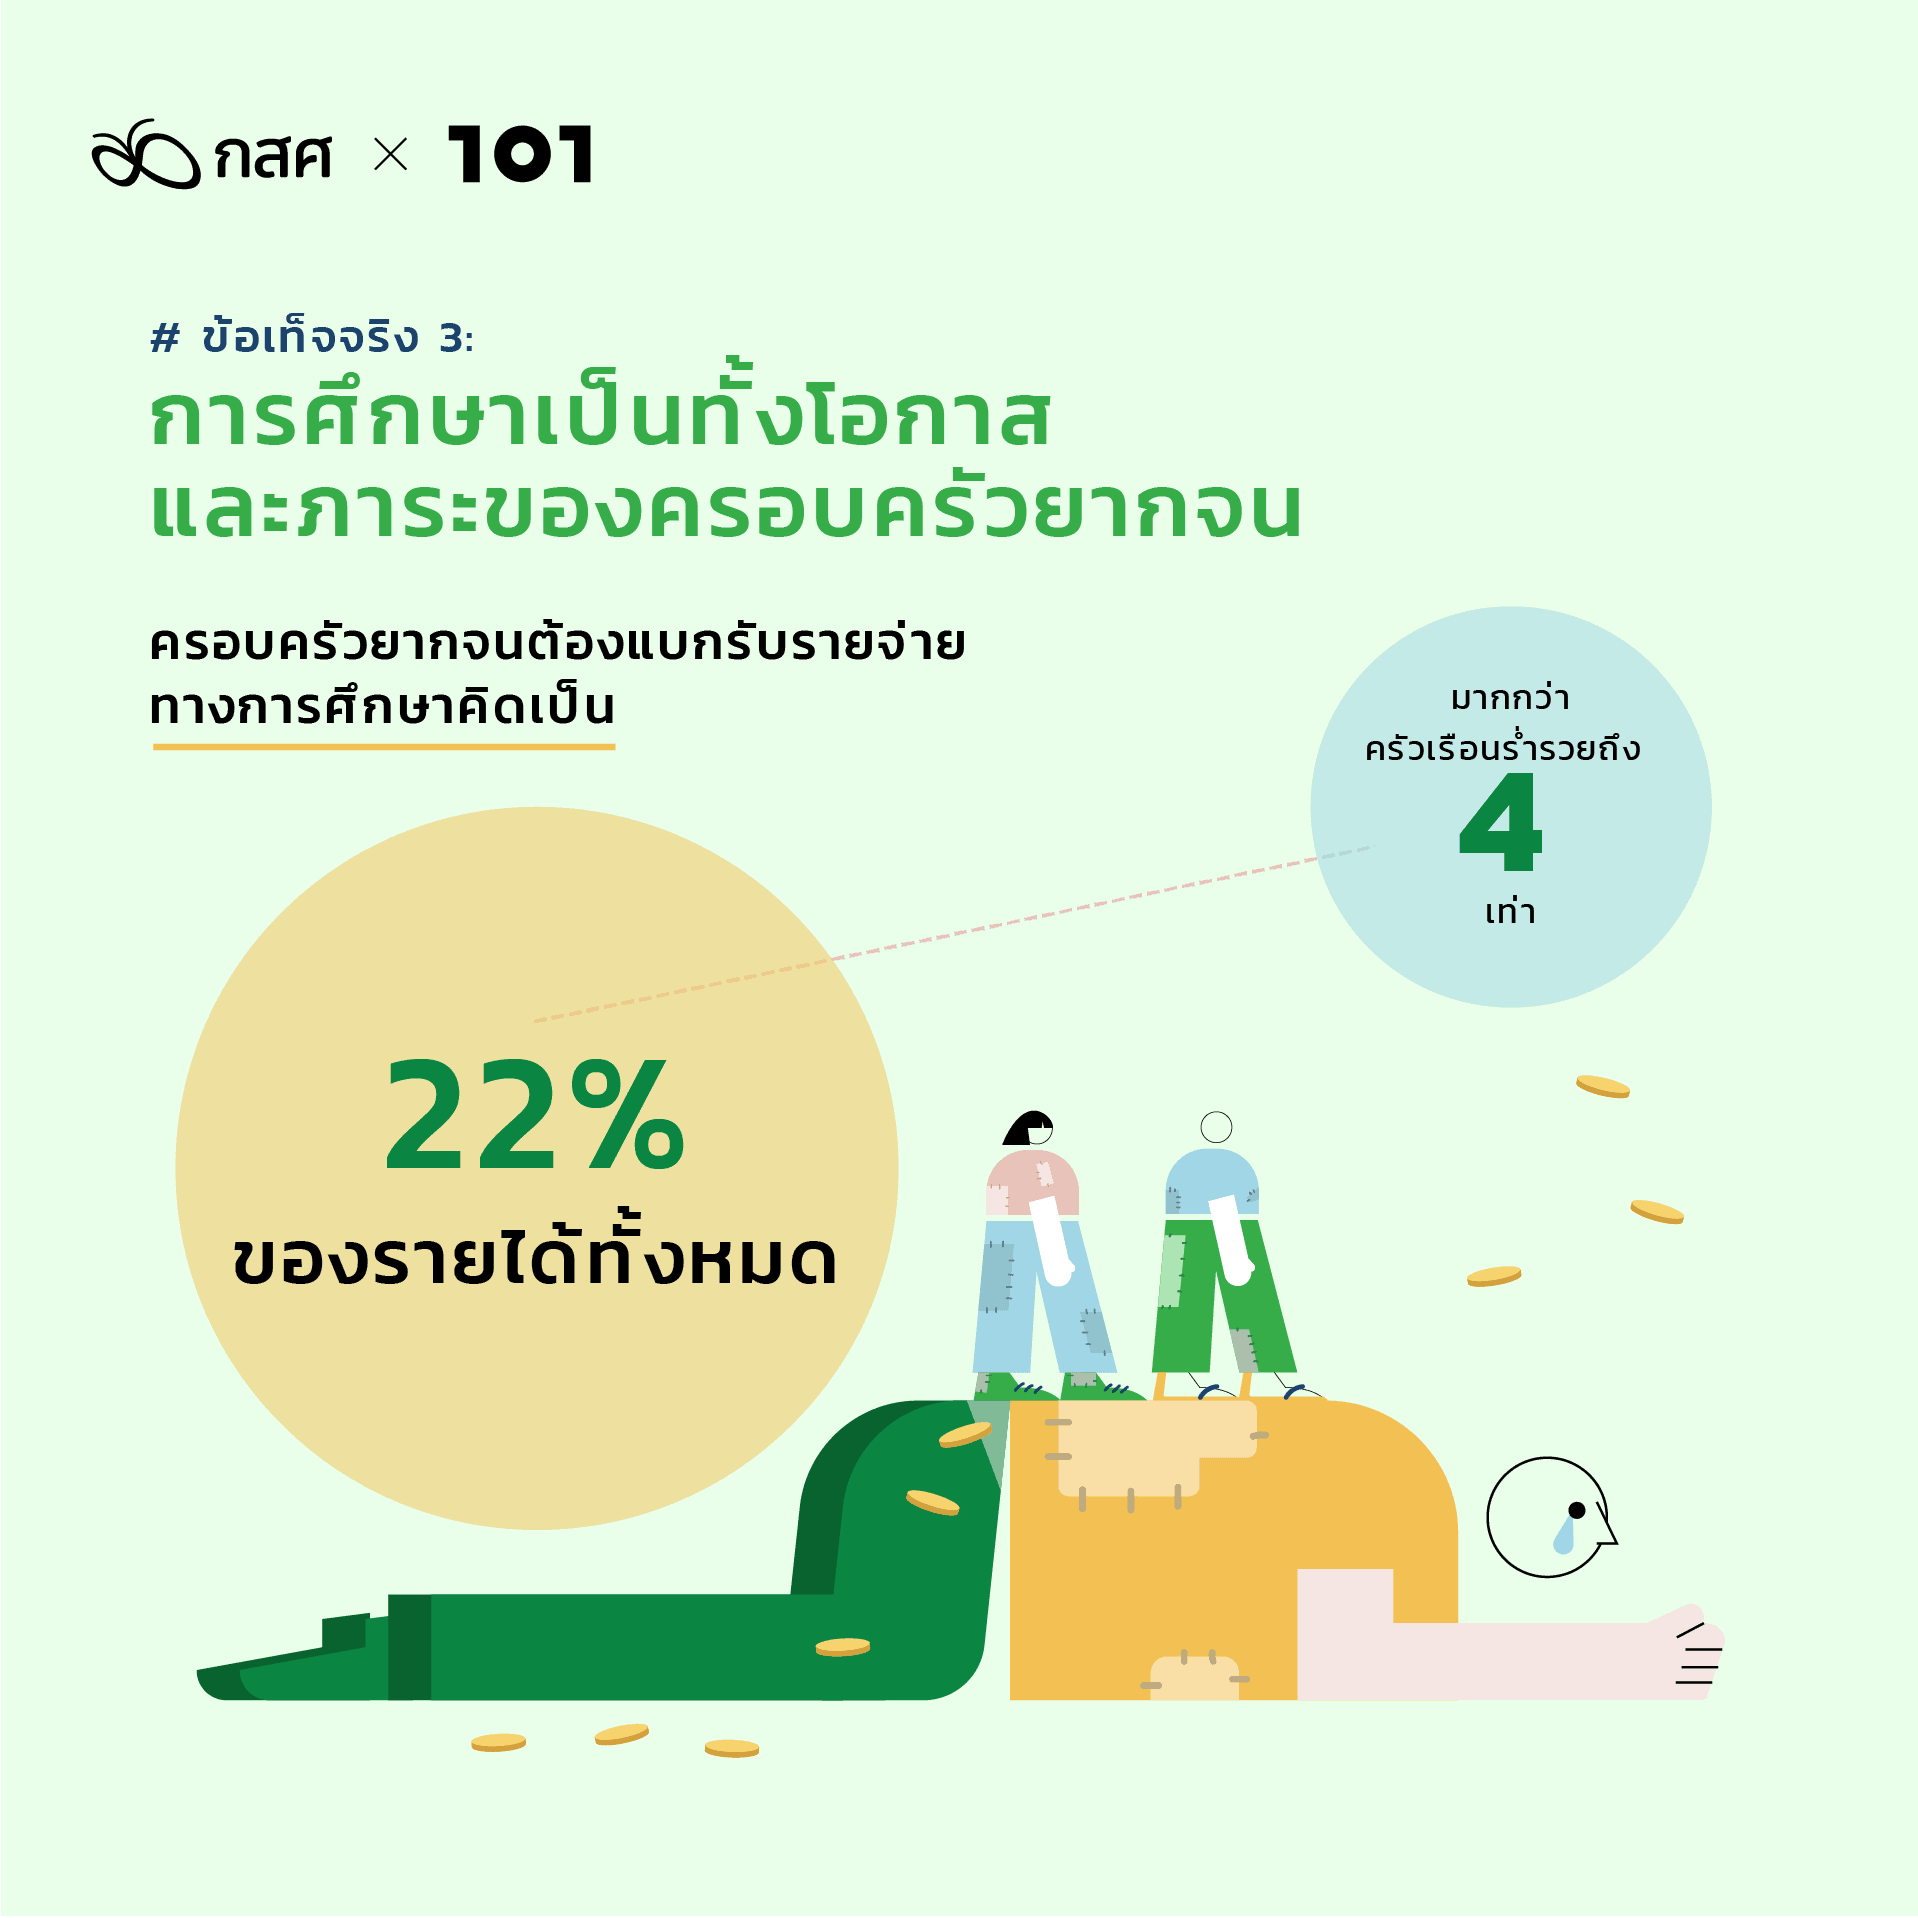 สำรวจความเหลื่อมล้ำการศึกษาไทย เพิ่มโอกาสให้เด็กยากจน: ข้อเท็จจริง 3: การศึกษาเป็นทั้งโอกาสและภาระของครอบครัวยากจน